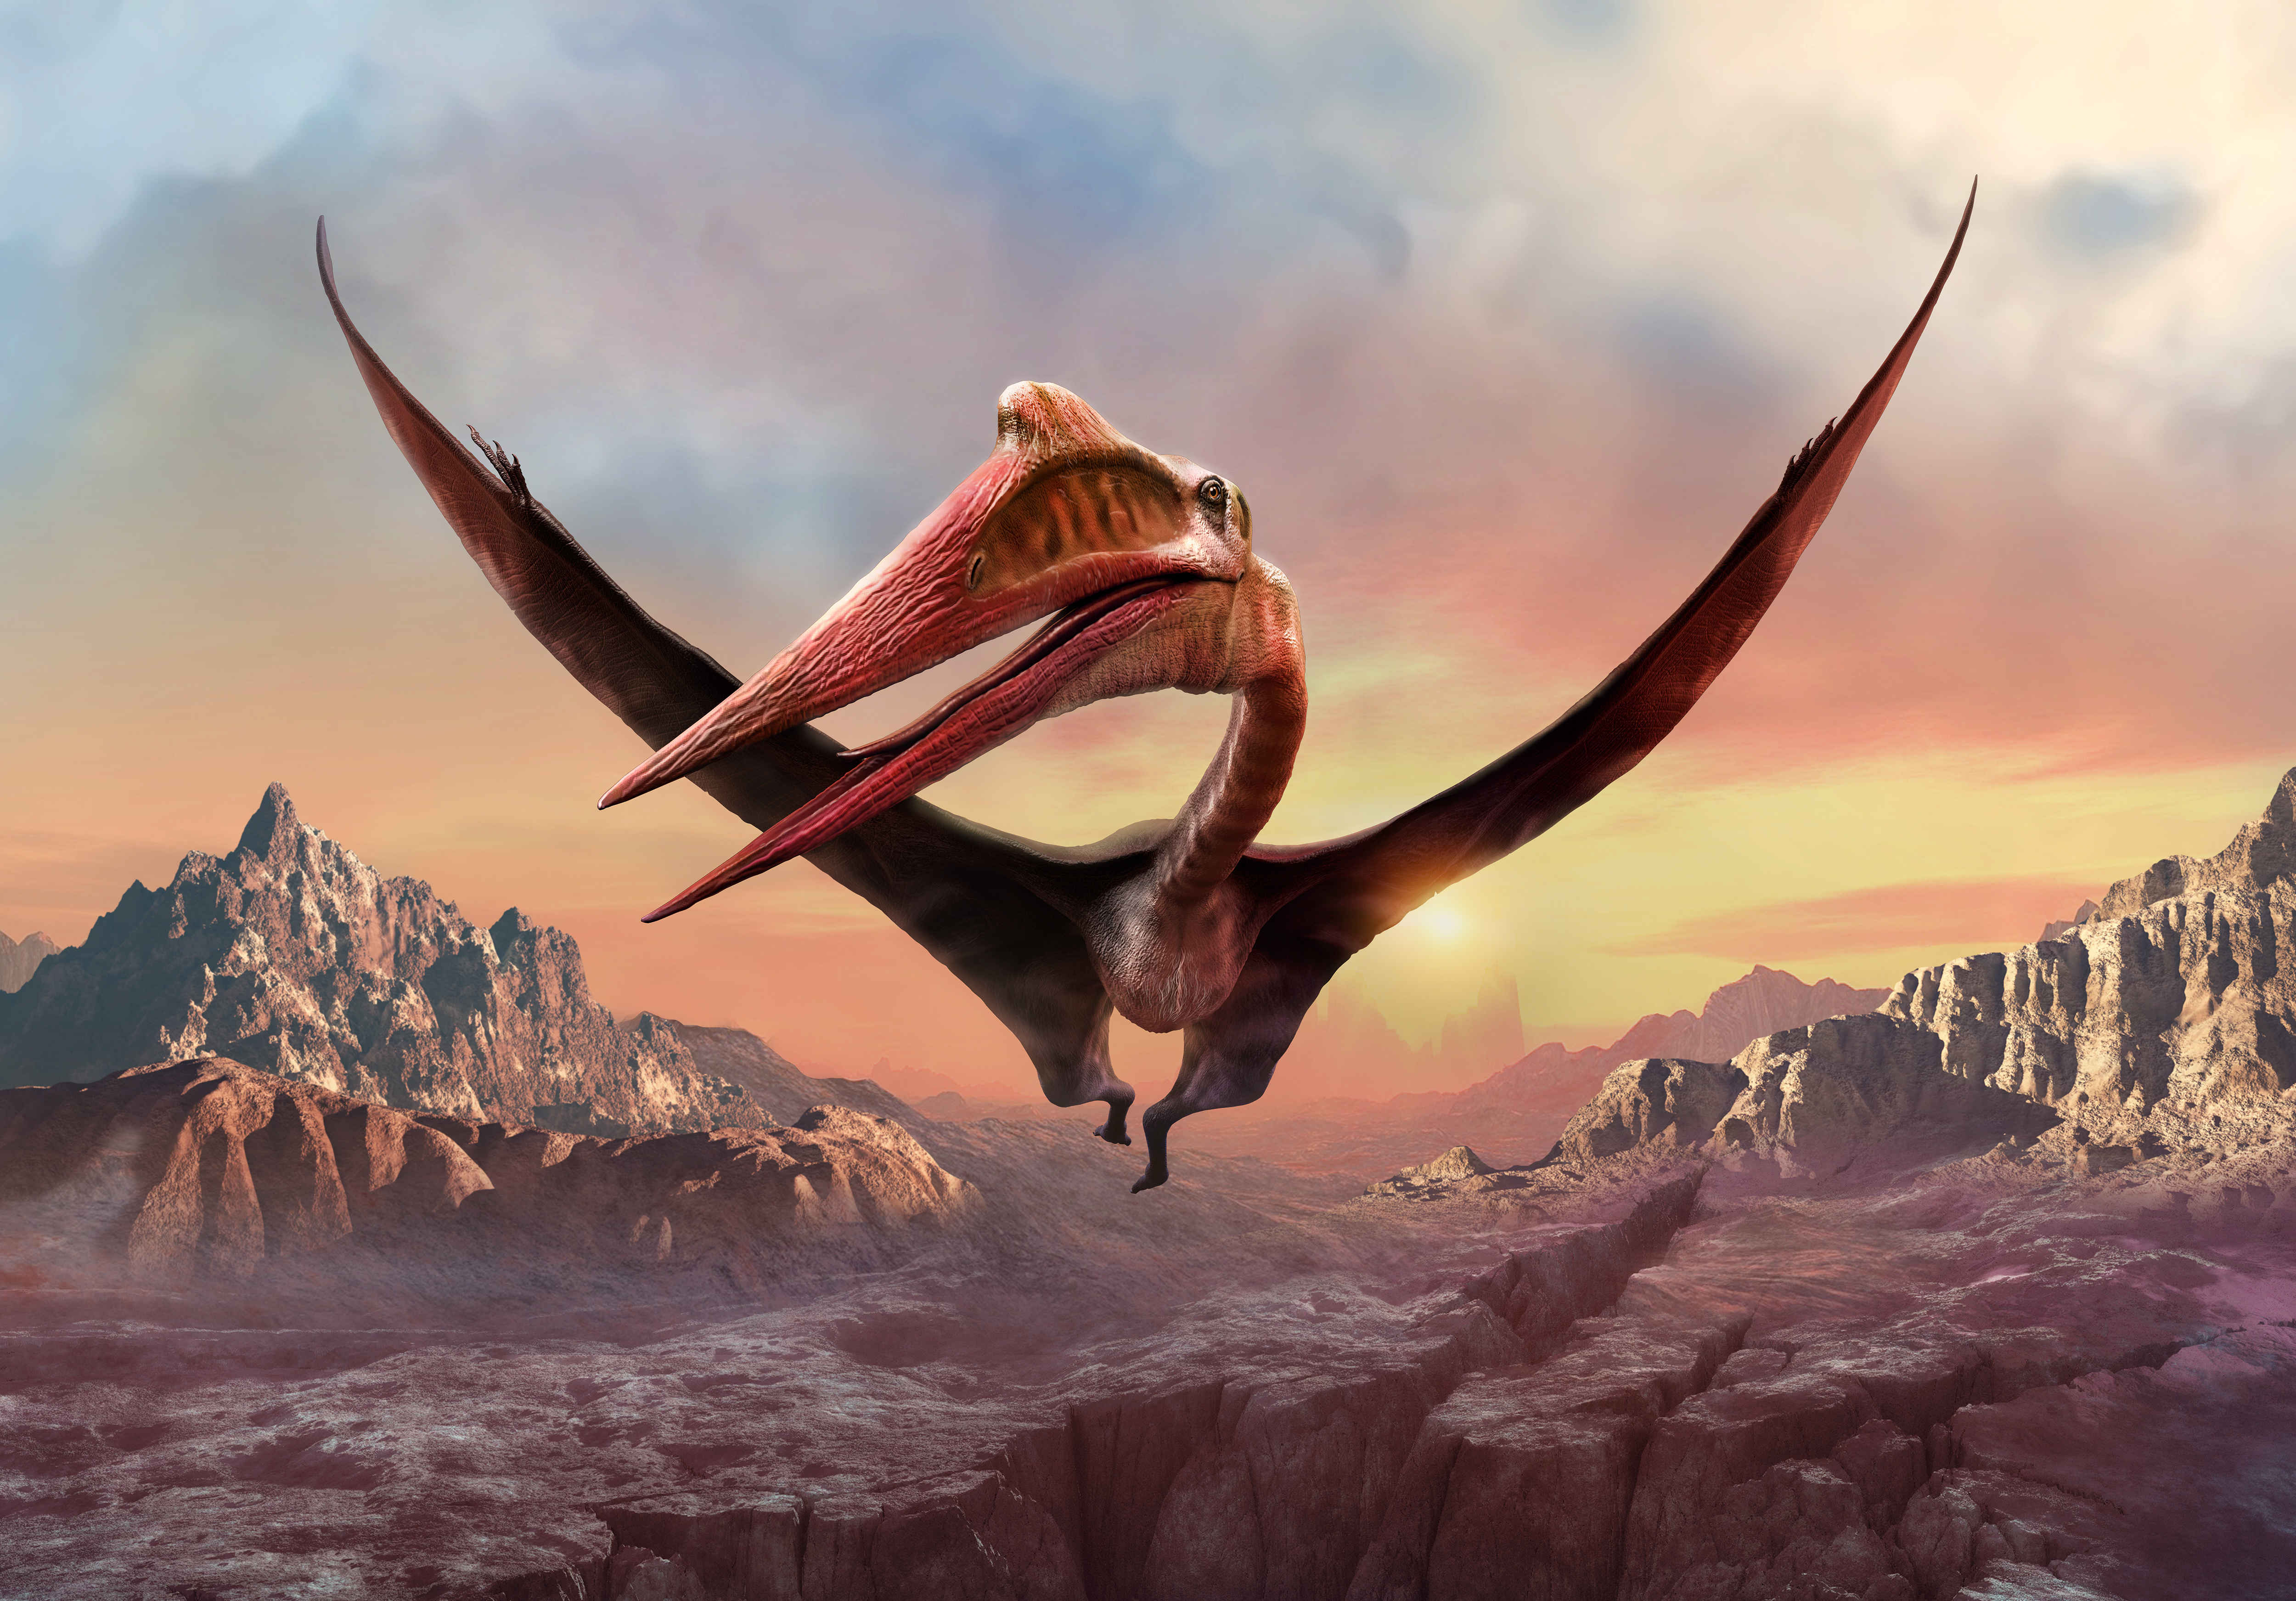 L'envergure de Quetzalcoatlus pouvait atteindre les 10 mètres. © warpaintcobra, Adobe Stock